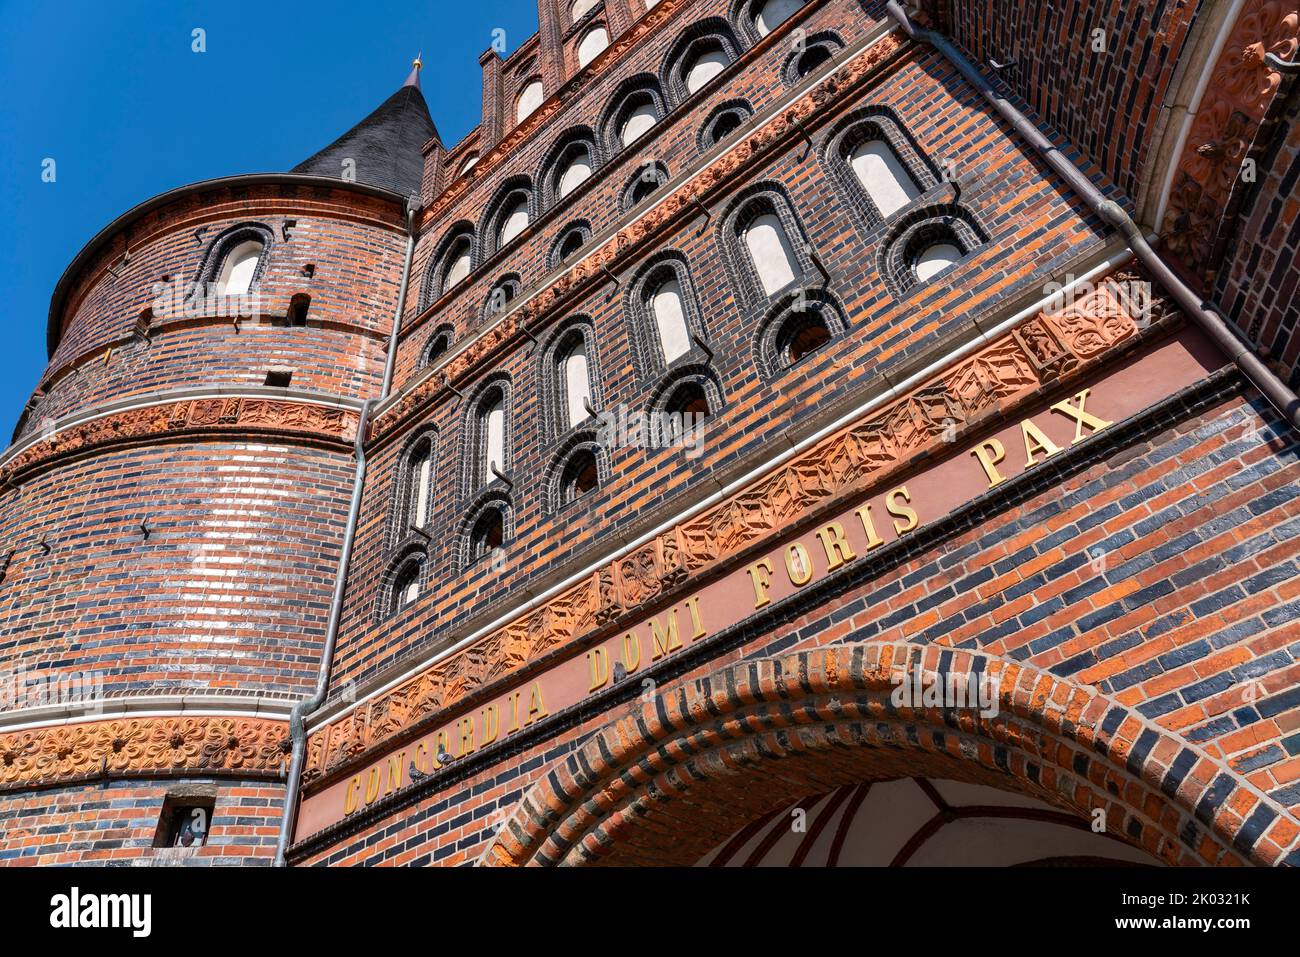 Das Holstentor ist das Wahrzeichen der Stadt und neben dem Burgtor das einzige erhaltene Stadttor Lübecks. In den Räumen des Holstentors befindet sich seit 1950 das Stadthistorische Museum. Das spätgotische Gebäude ist Teil der ehemaligen Lübecker Stadtbefestigung. Inschrift auf der Felsseite des Holsten-Tores. 'Concordia domi foris pax' 'Eintracht im Inneren und Frieden im Freien'. Stockfoto